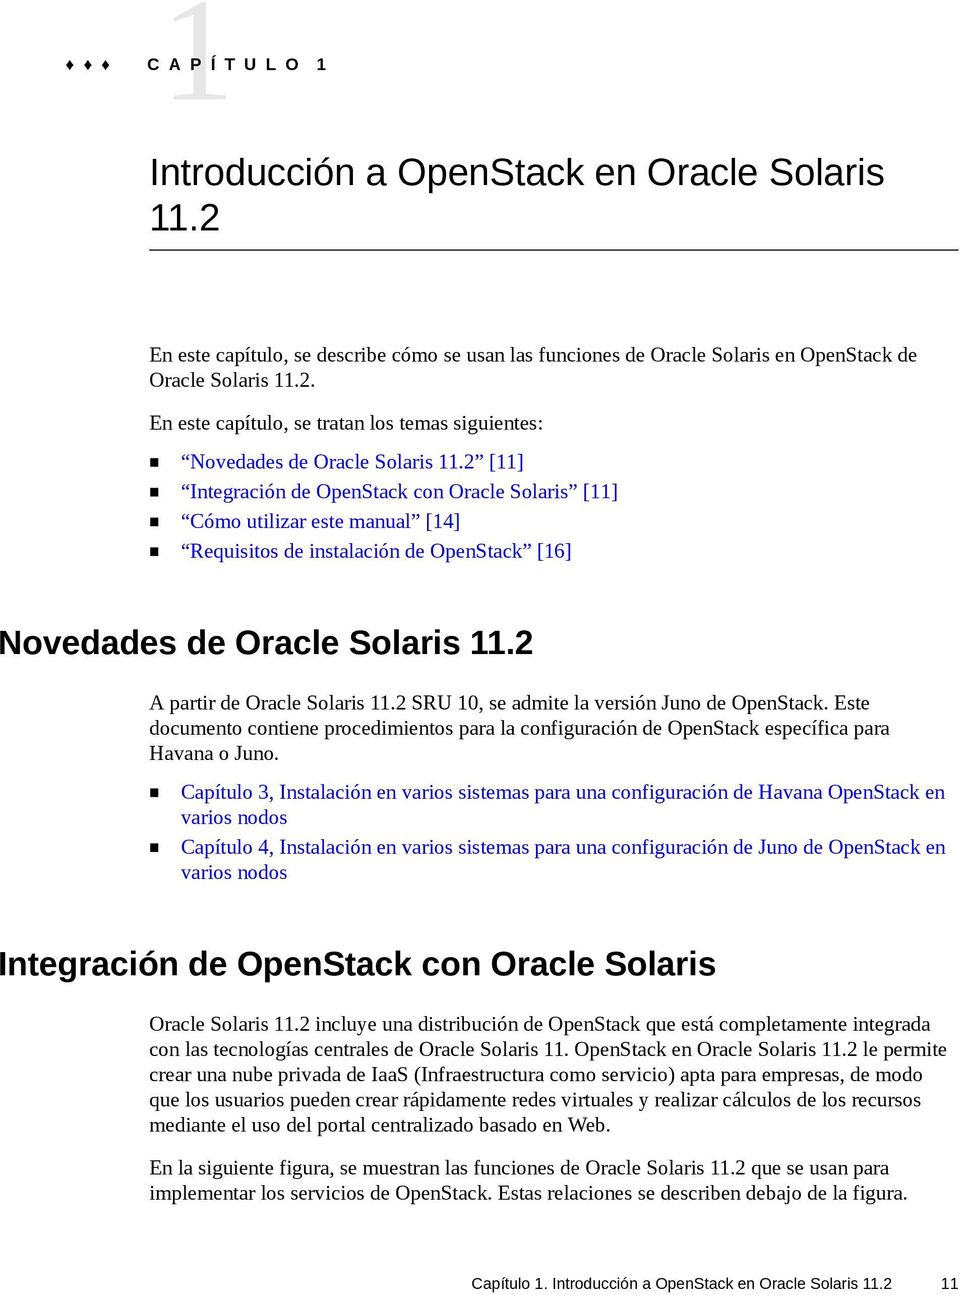 2 SRU 10, se admite la versión Juno de OpenStack. Este documento contiene procedimientos para la configuración de OpenStack específica para Havana o Juno.